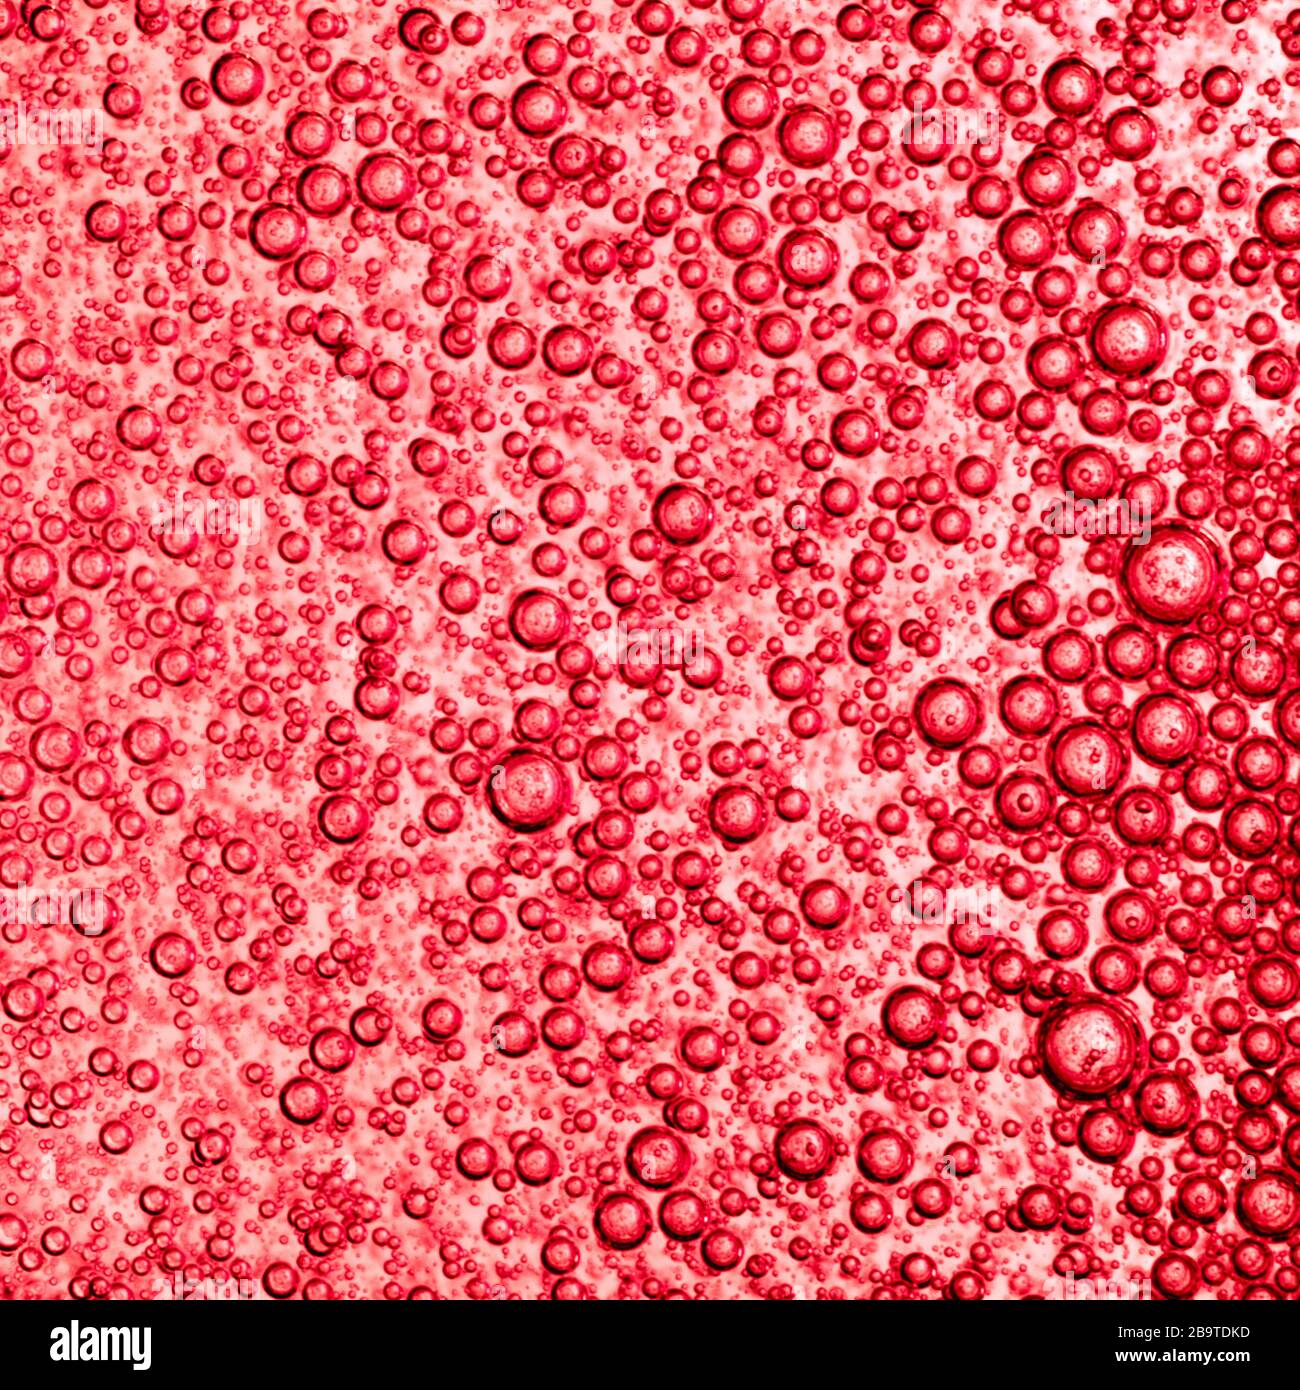 Luftblasen in roten Flüssigkeit Textur. Stockfoto